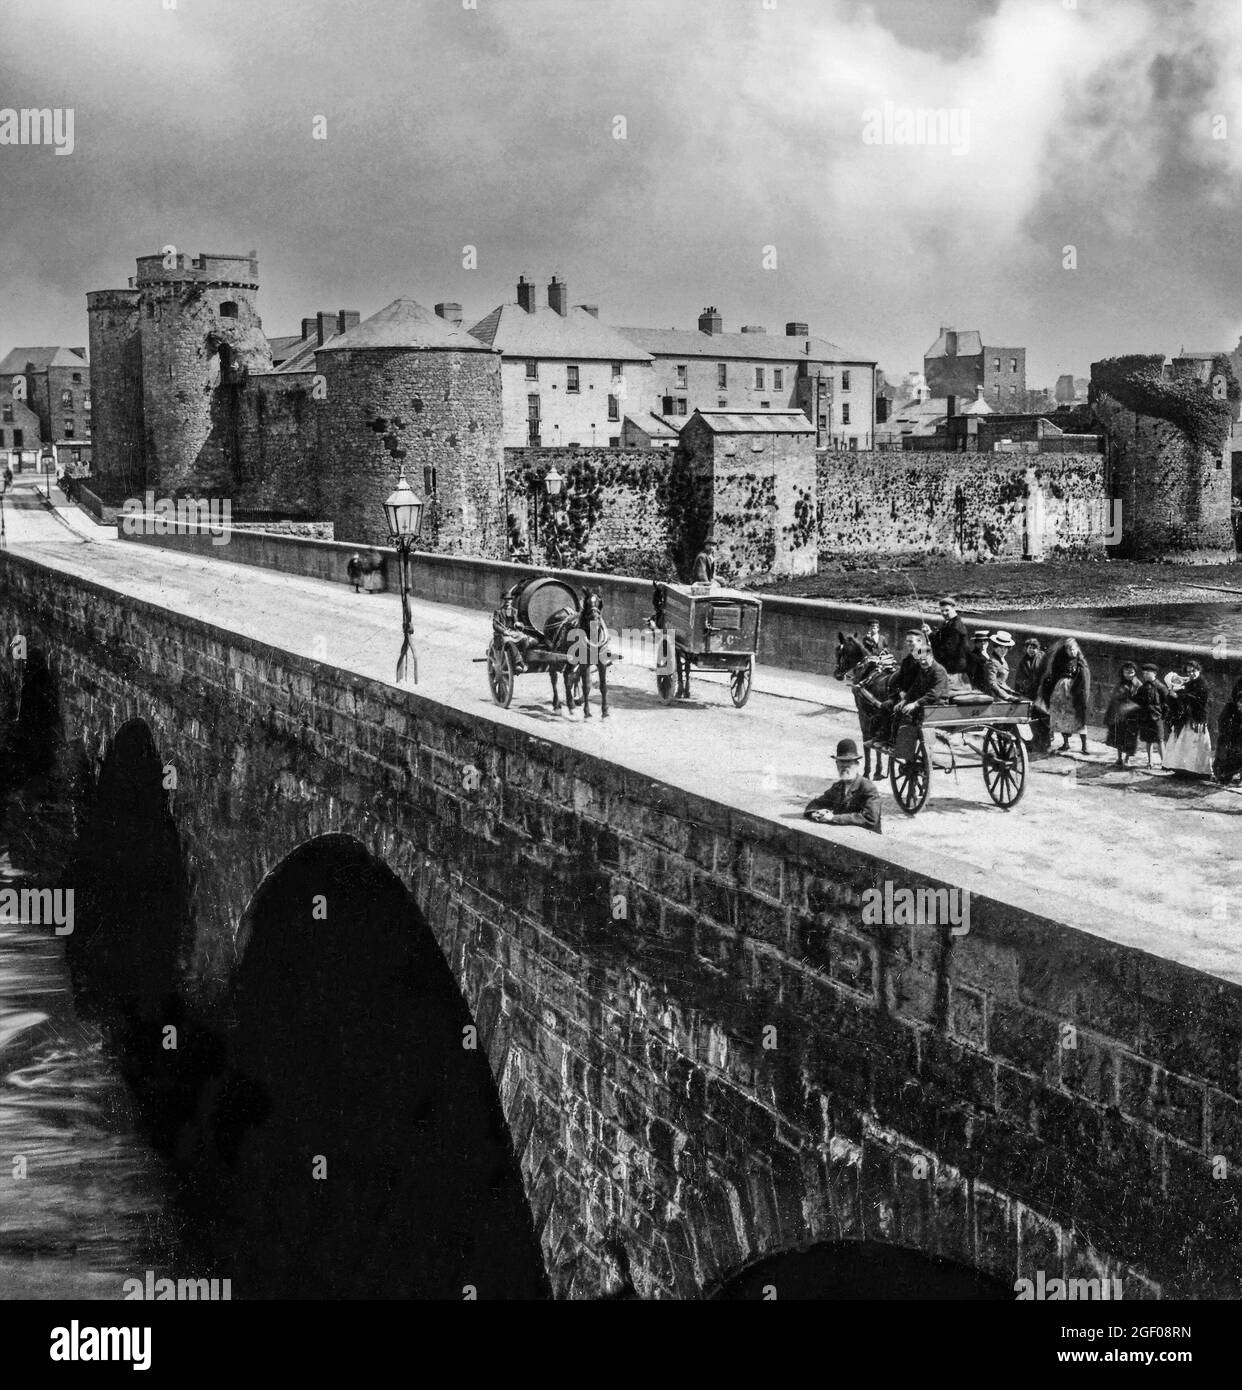 Une vue du début du XXe siècle sur les véhicules tirés par des chevaux et les gens sur le pont Thormond au-dessus de la rivière Shannon surplombé par le château du roi John du XIIIe siècle, ville de Limerick, Irlande Banque D'Images